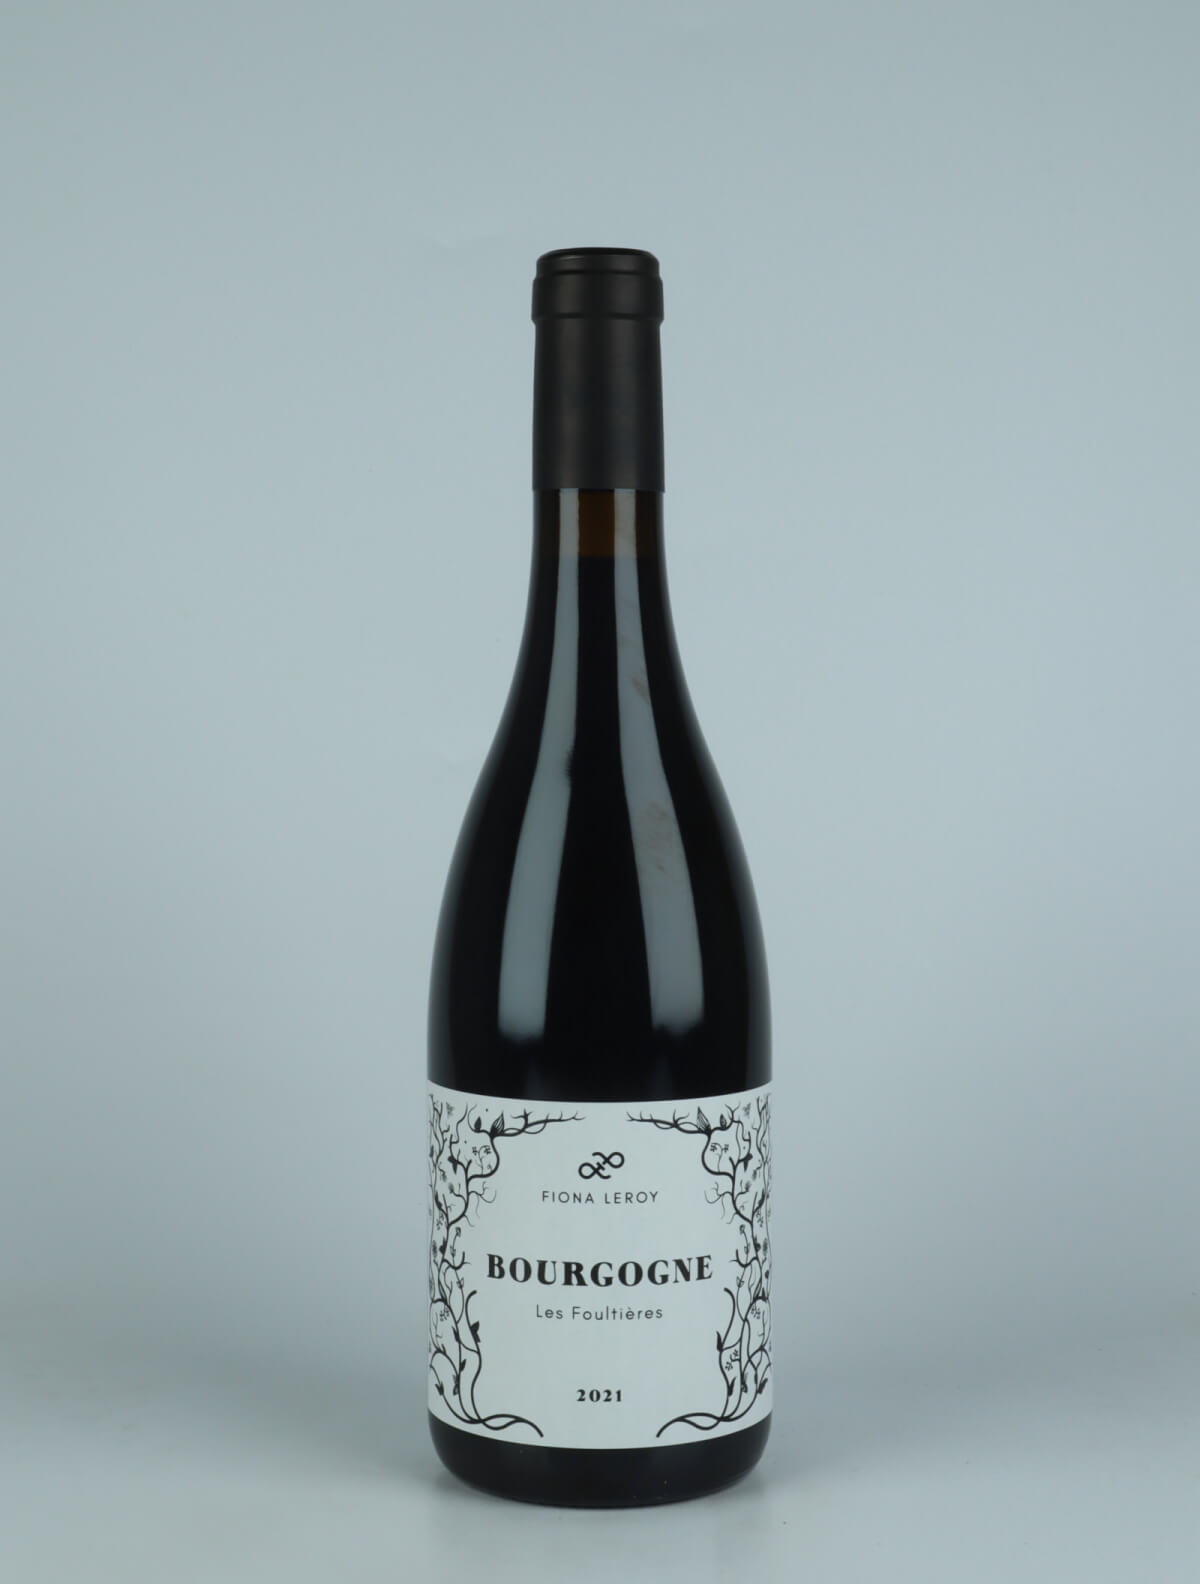 En flaske 2021 Bourgogne Rouge - Les Foultières Rødvin fra Fiona Leroy, Bourgogne i Frankrig